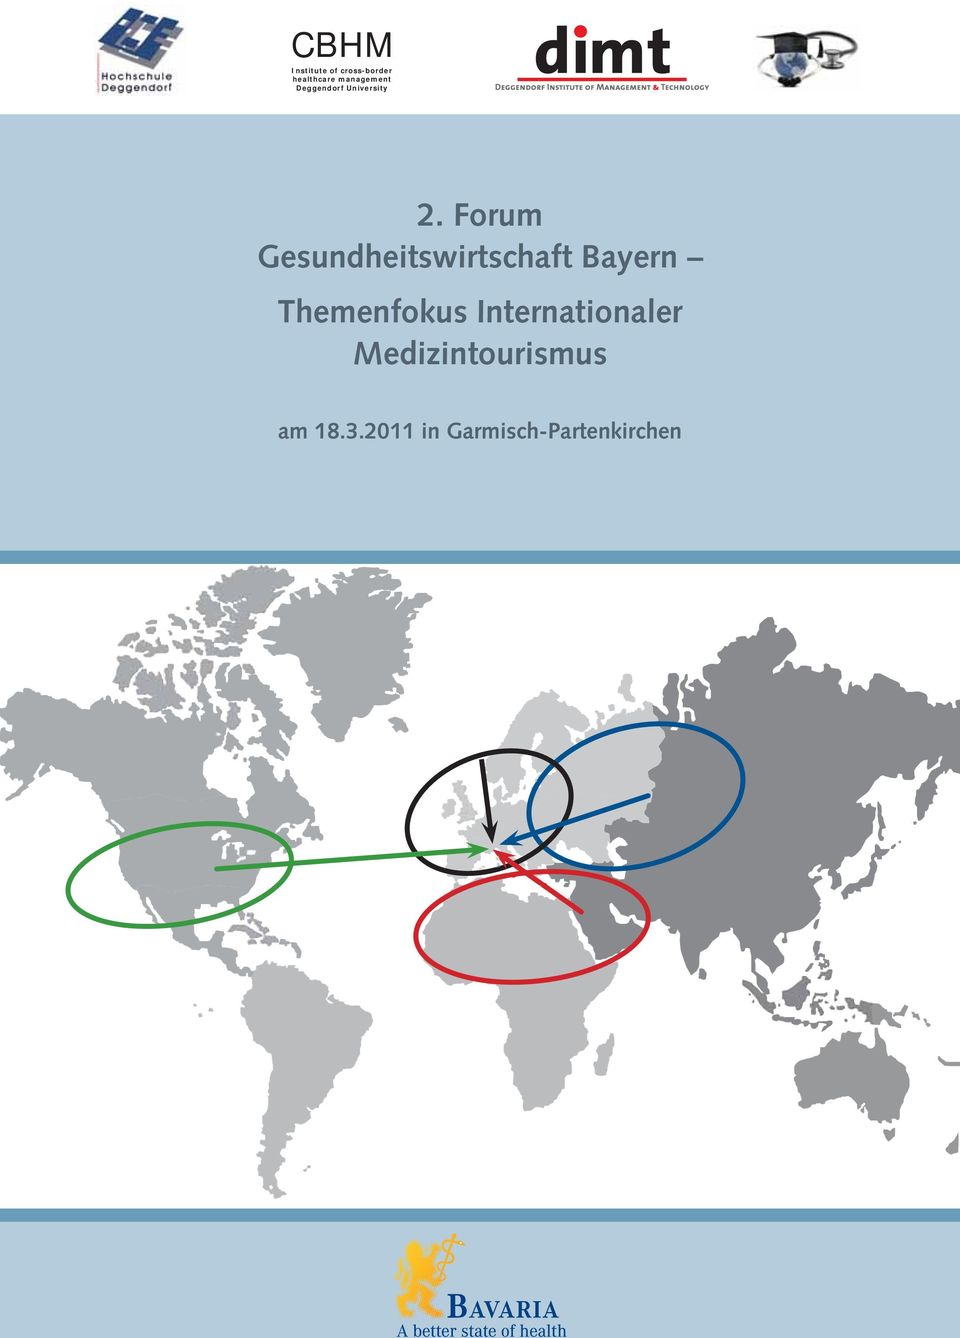 Forum Gesundheitswirtschaft Bayern Themenfokus